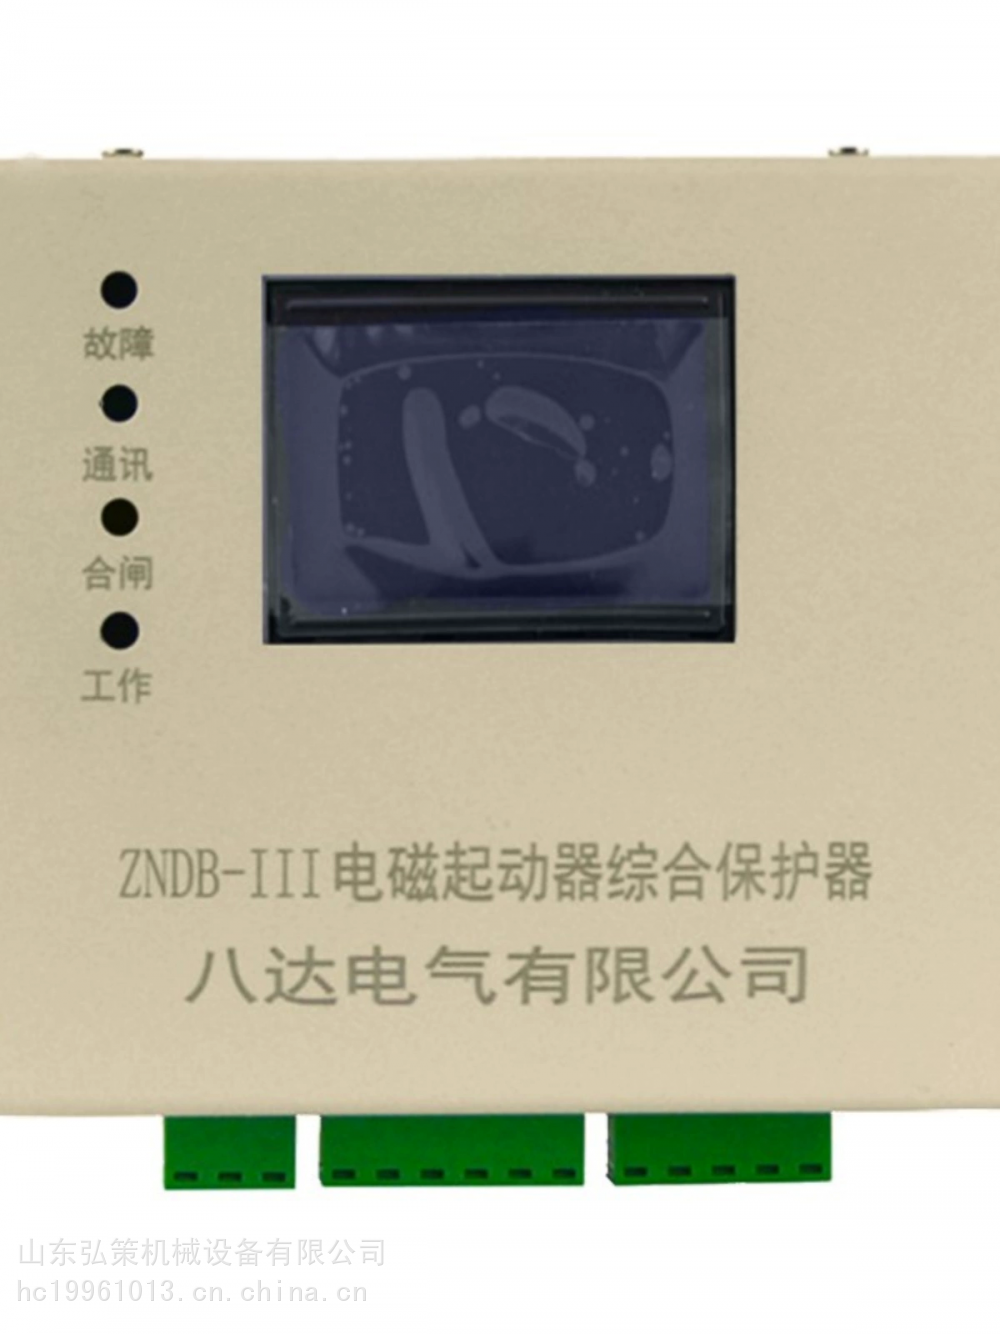 八达电气矿用ZNDB-III电磁起动器综合保护器磁力开关保护装置111